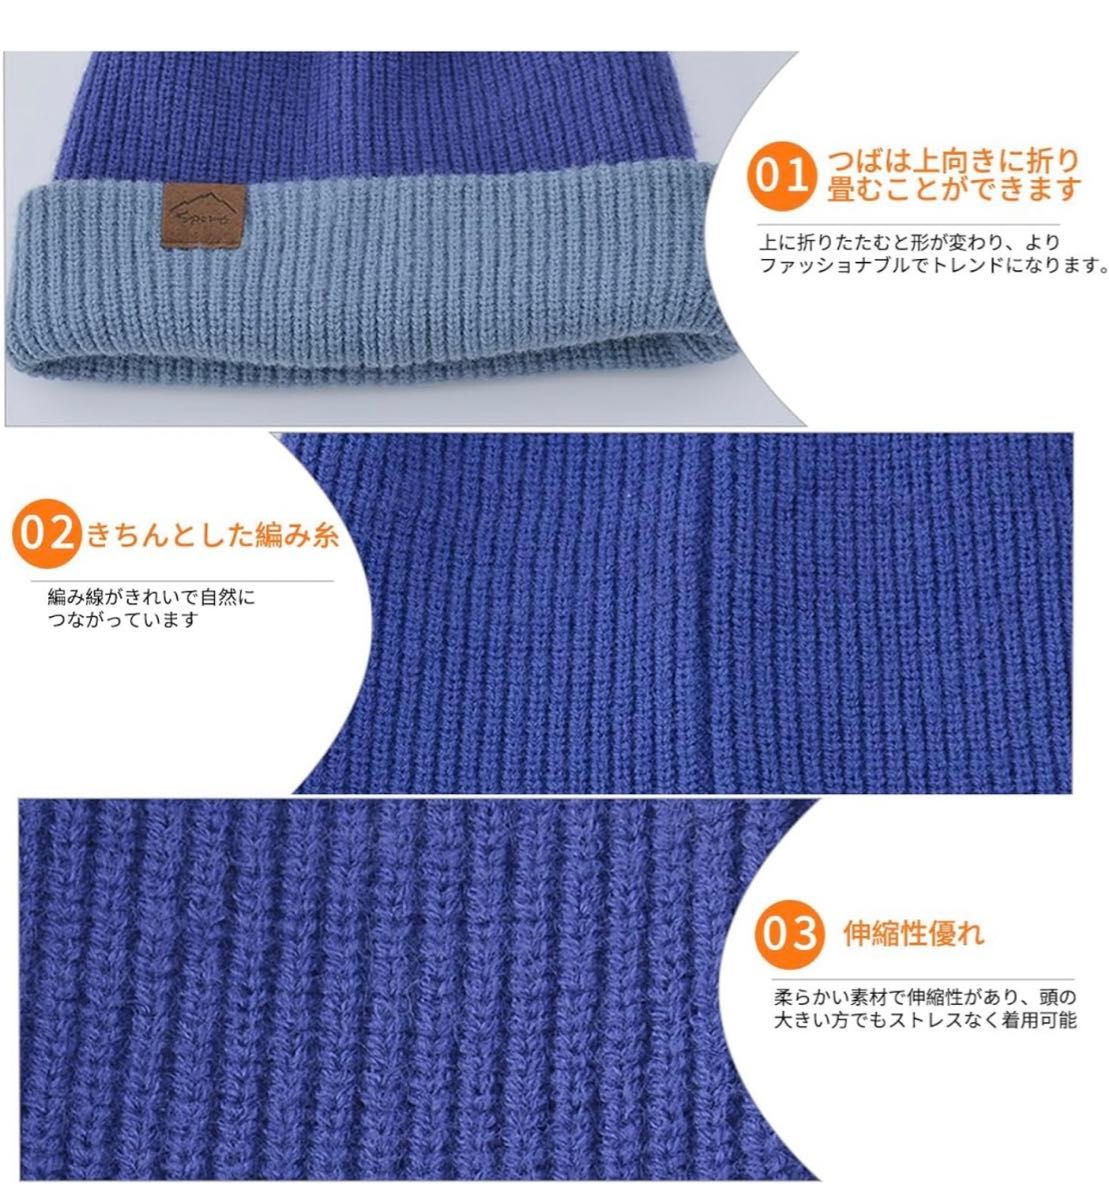 ニット帽 メンズ レディース 秋 冬 防寒 ニットキャップ ニット 帽子 両面使用可能